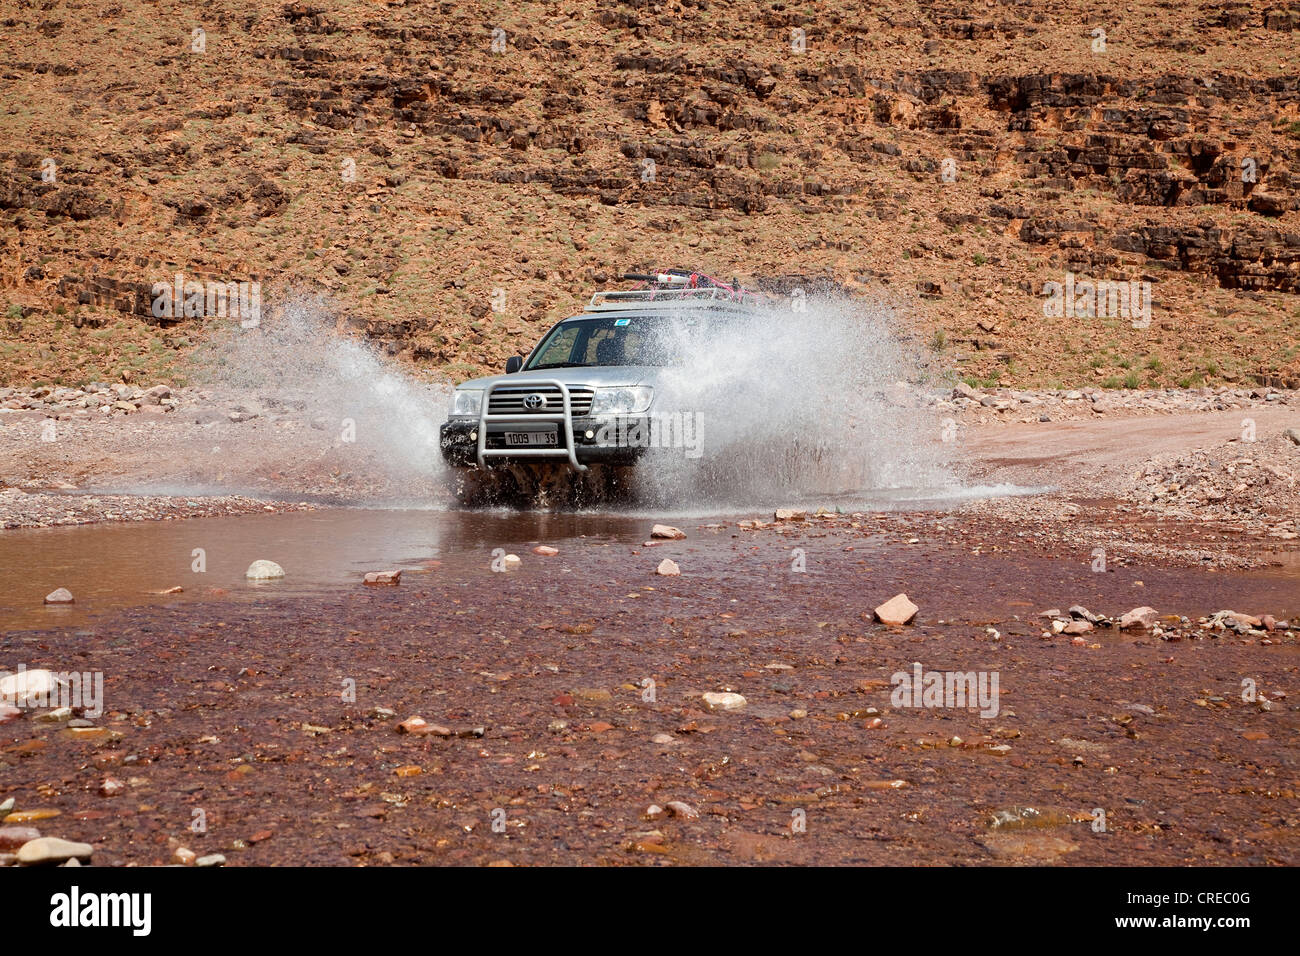 Un véhicule tout-terrain, Toyota Land Cruiser, roulant dans le lit d'une rivière près de Foum-Zguid, Maroc, Afrique Banque D'Images